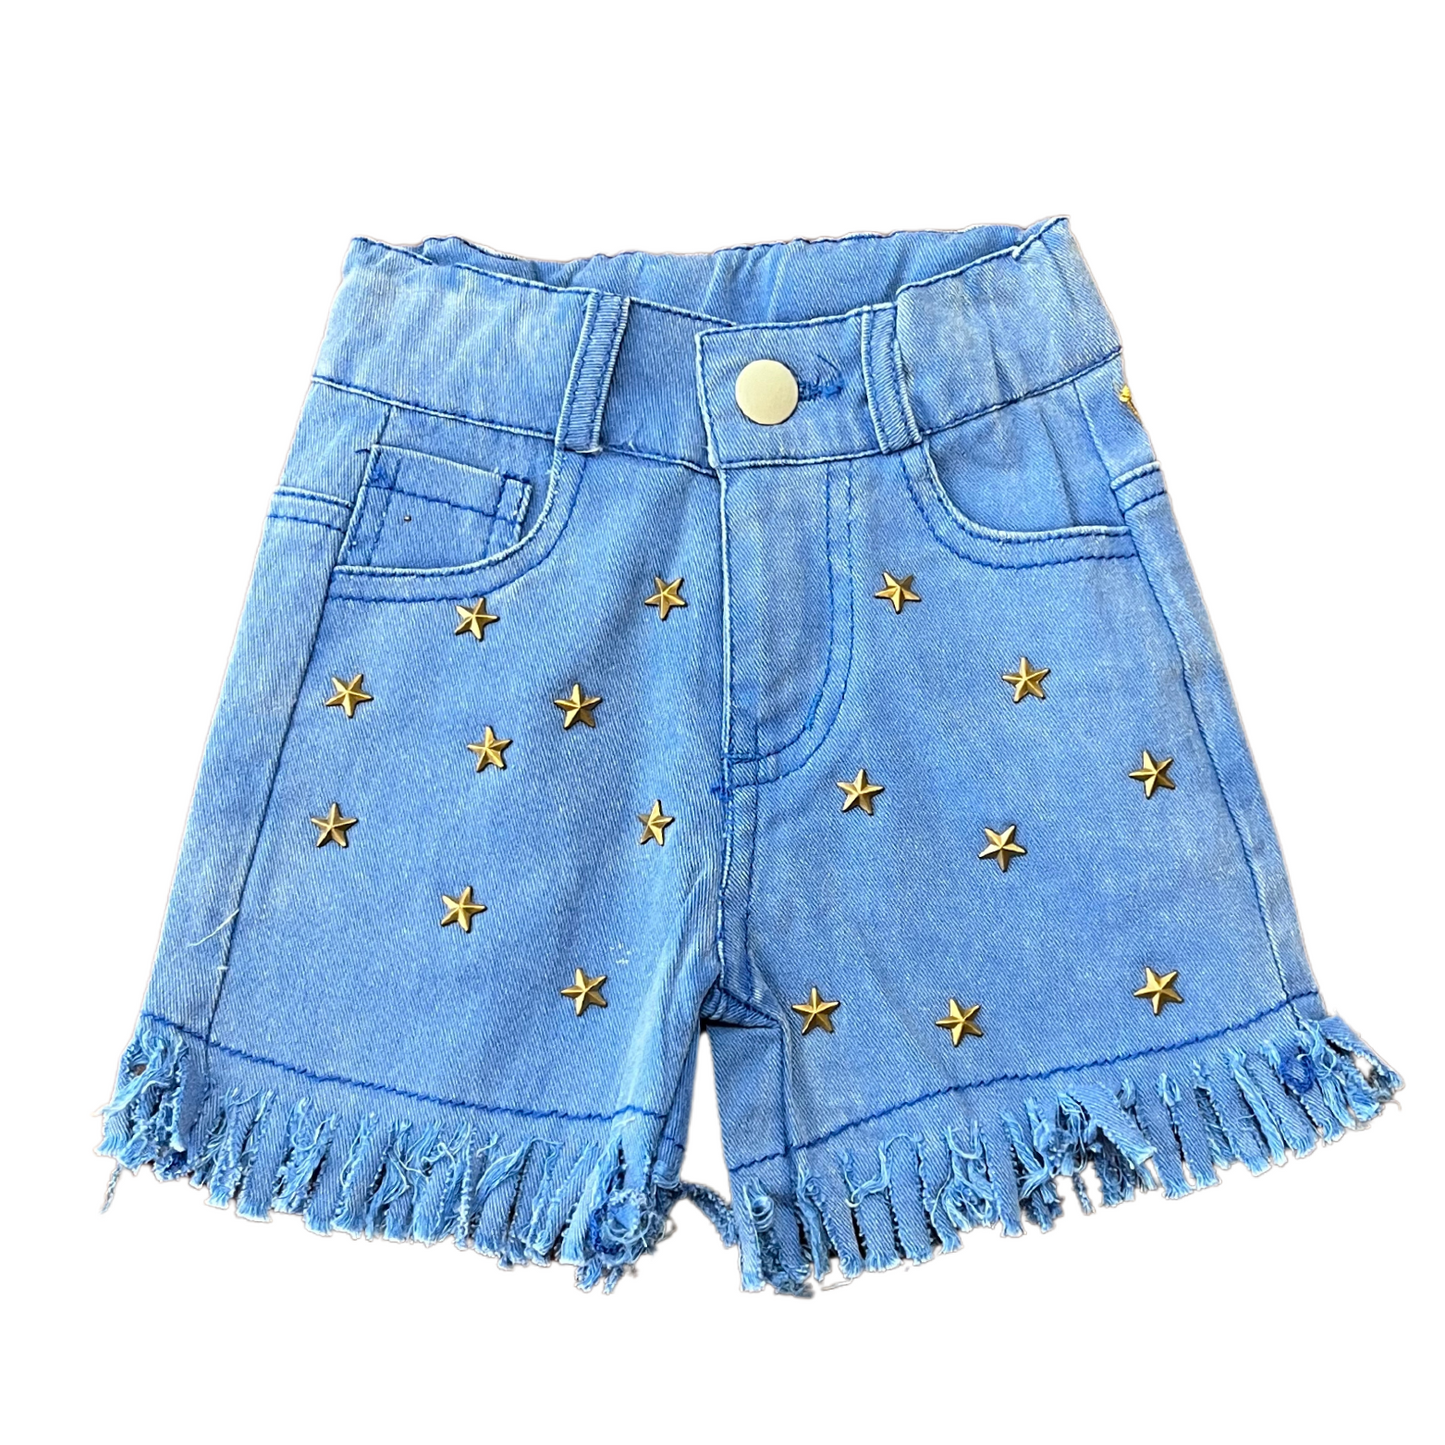 Blueberry Shorts